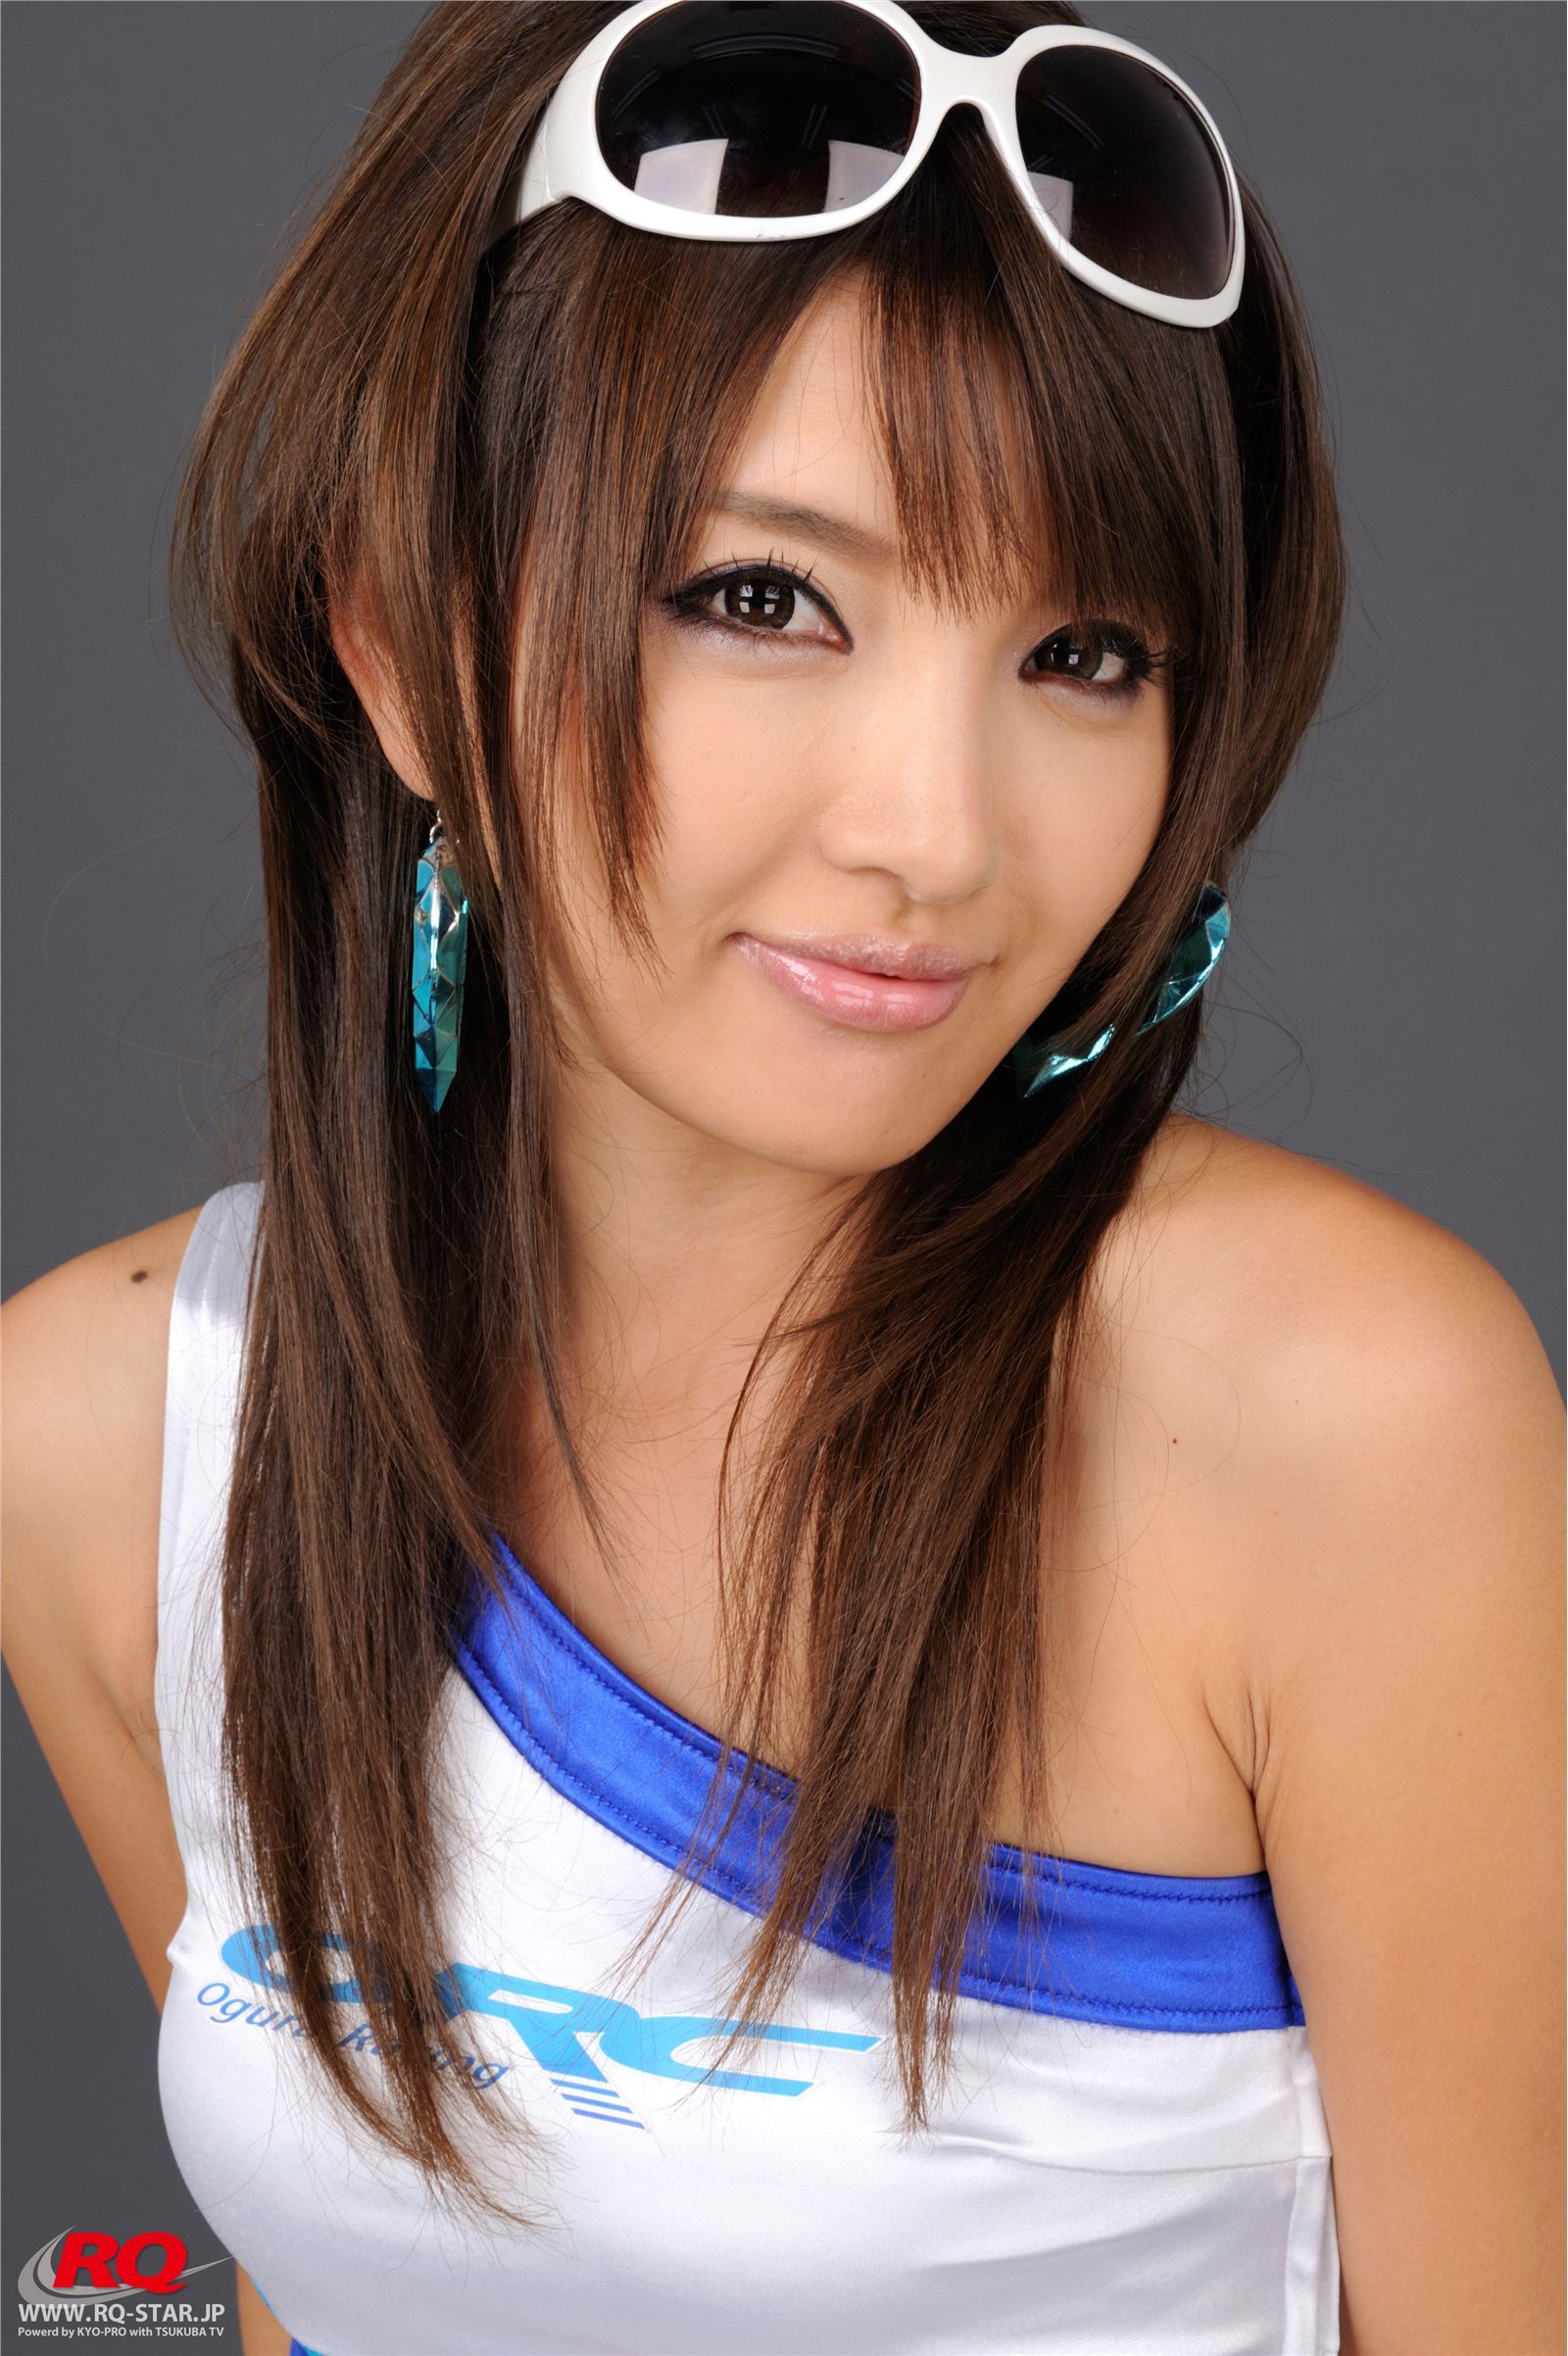 Chie Yamauchi RQ star